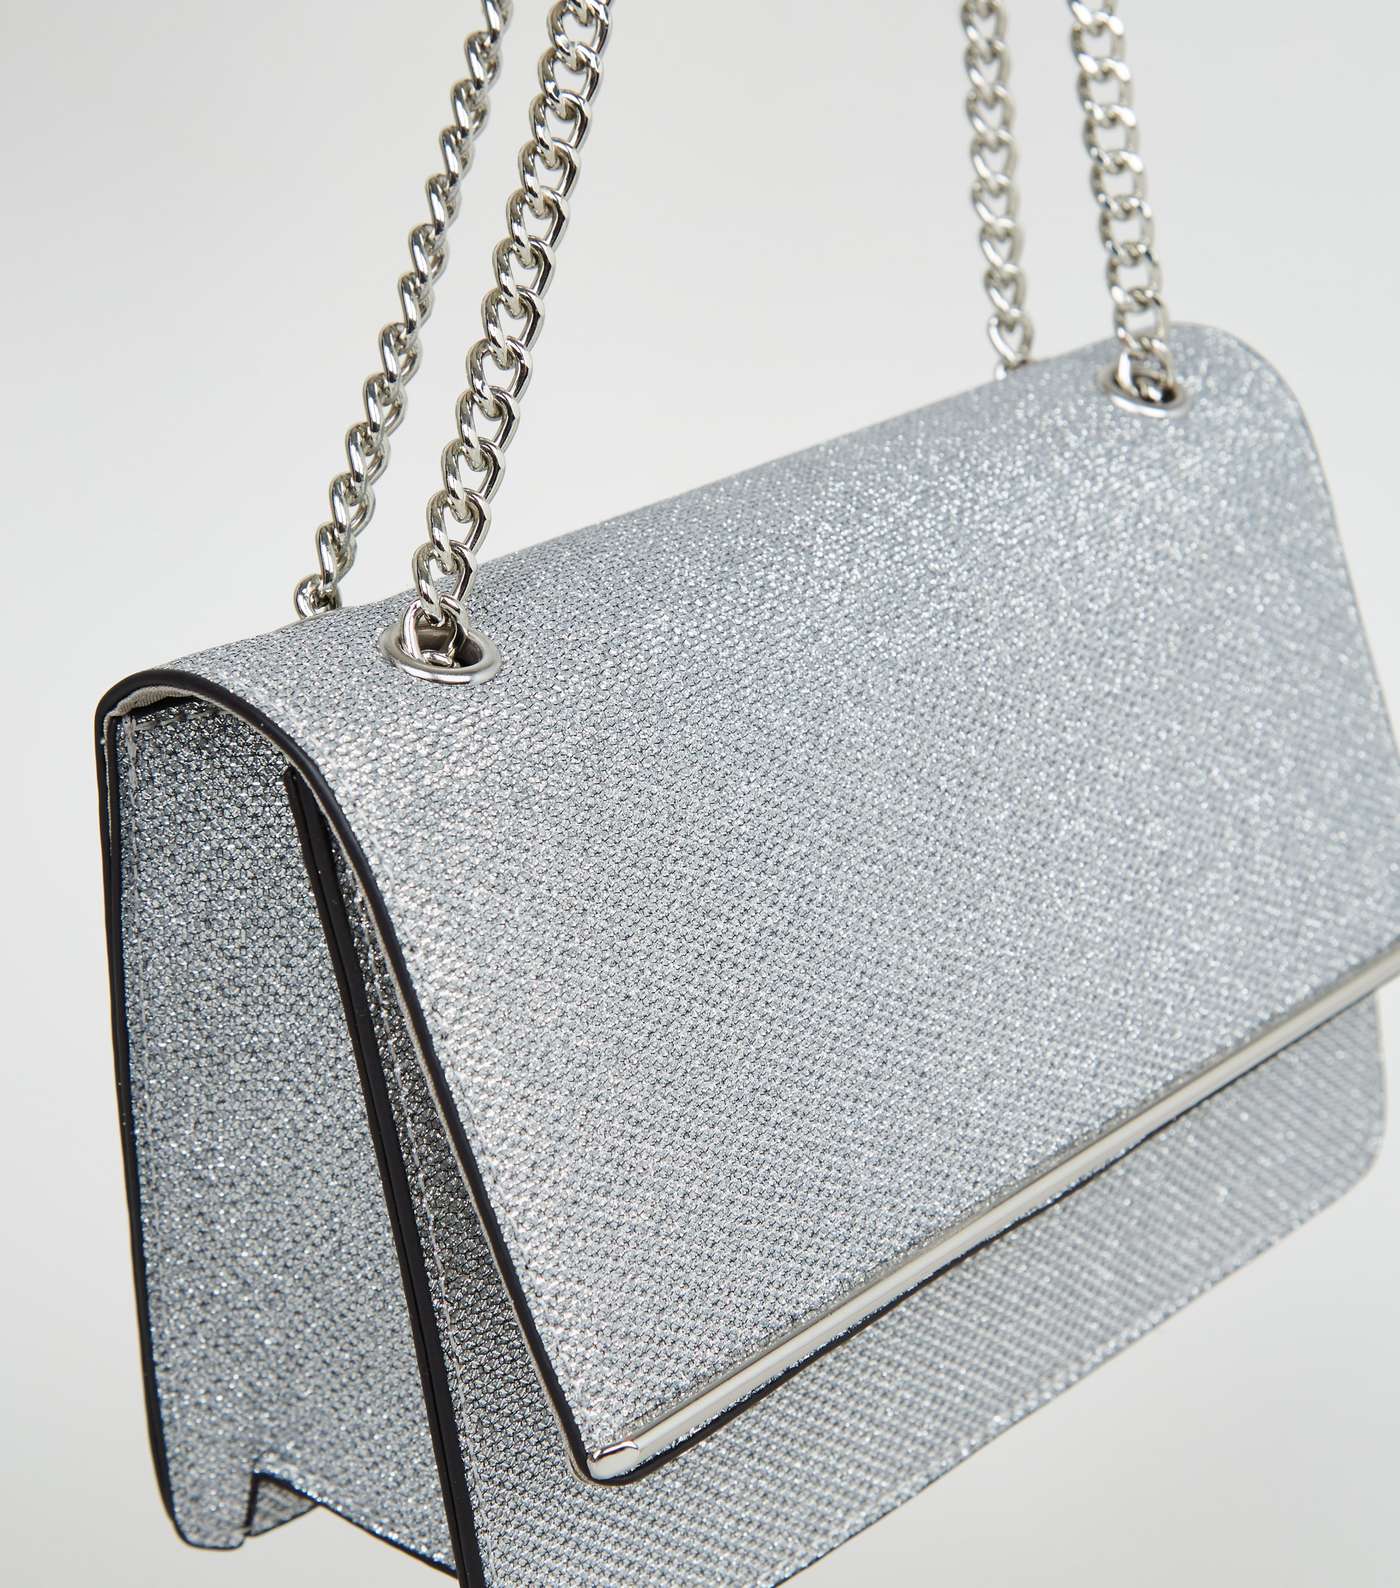 Silver Chain Strap Shoulder Bag Image 3